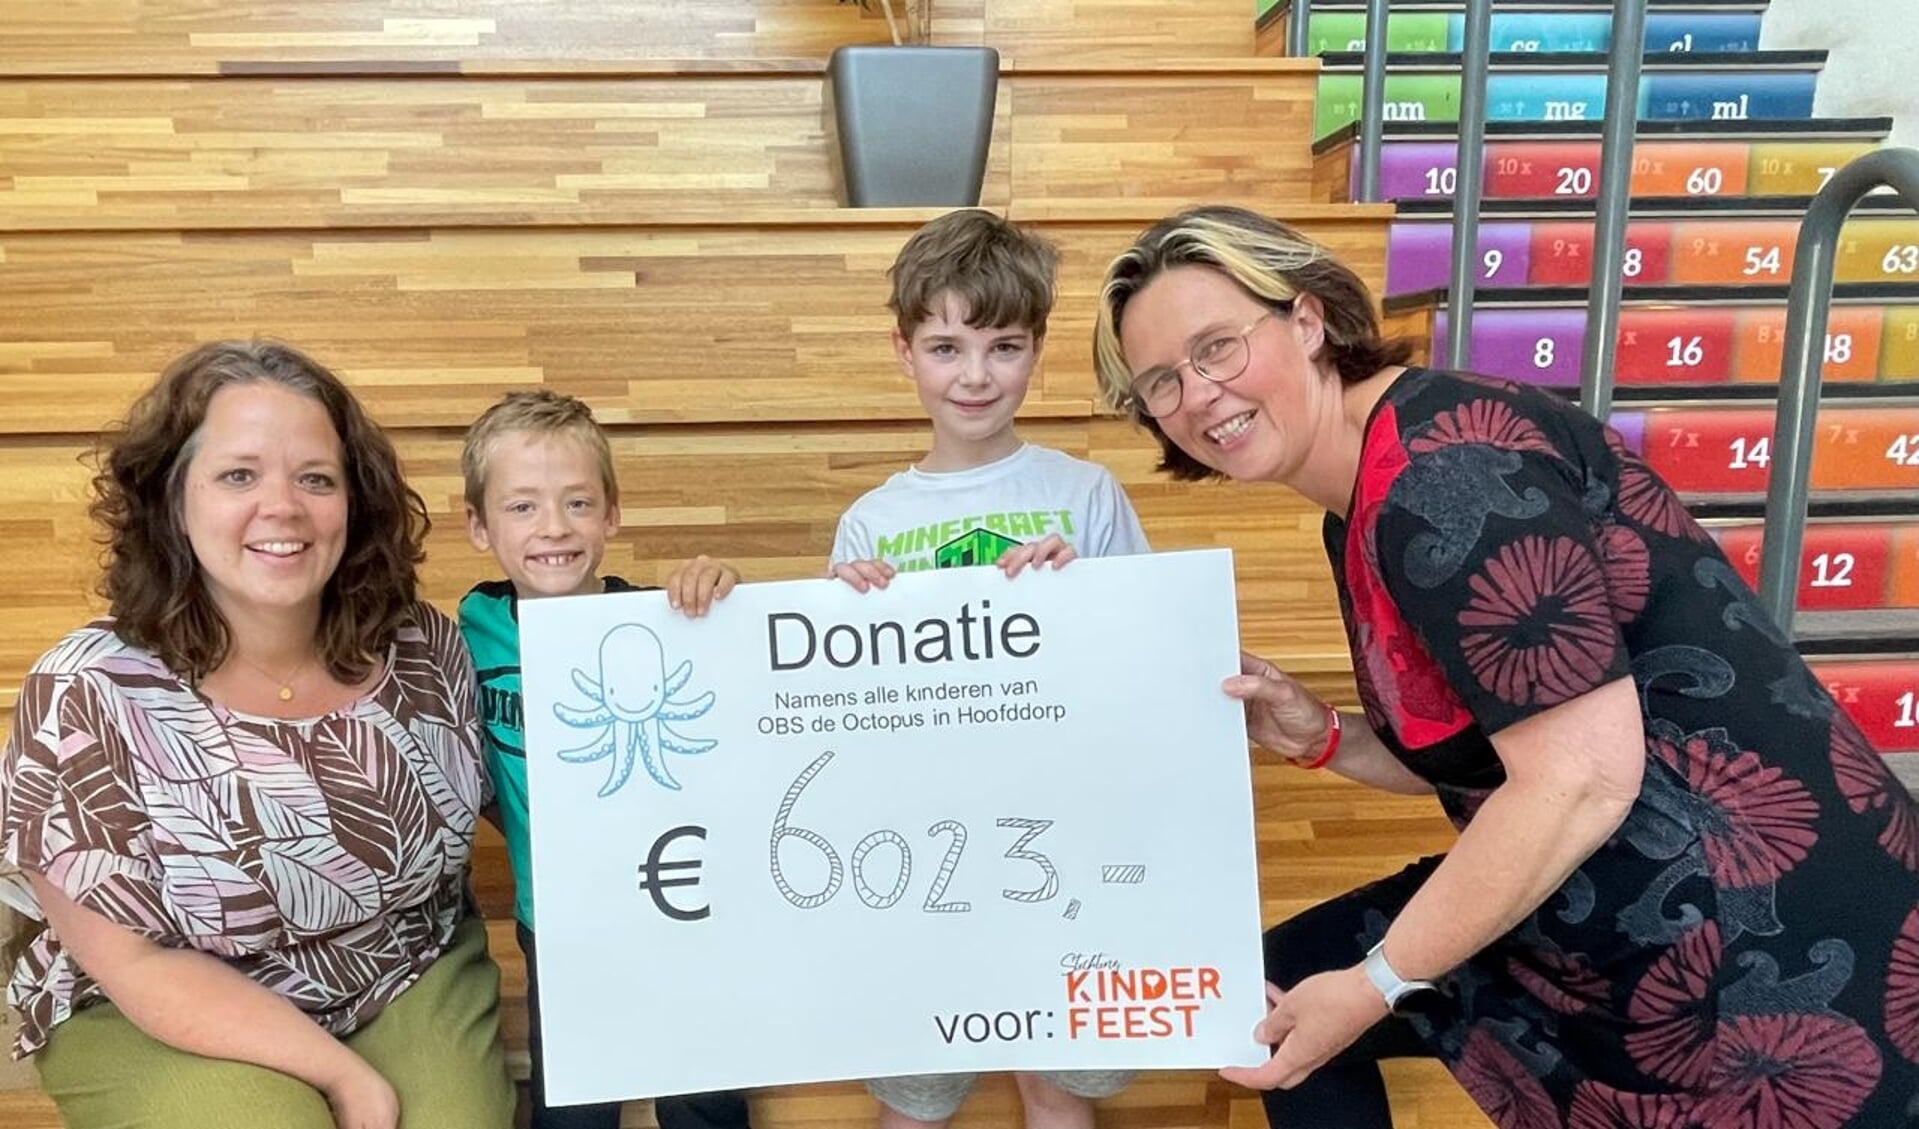 De cheque werd overhandigd door Mirko en Aiden aan Anneke van Stichting Kinderfeest